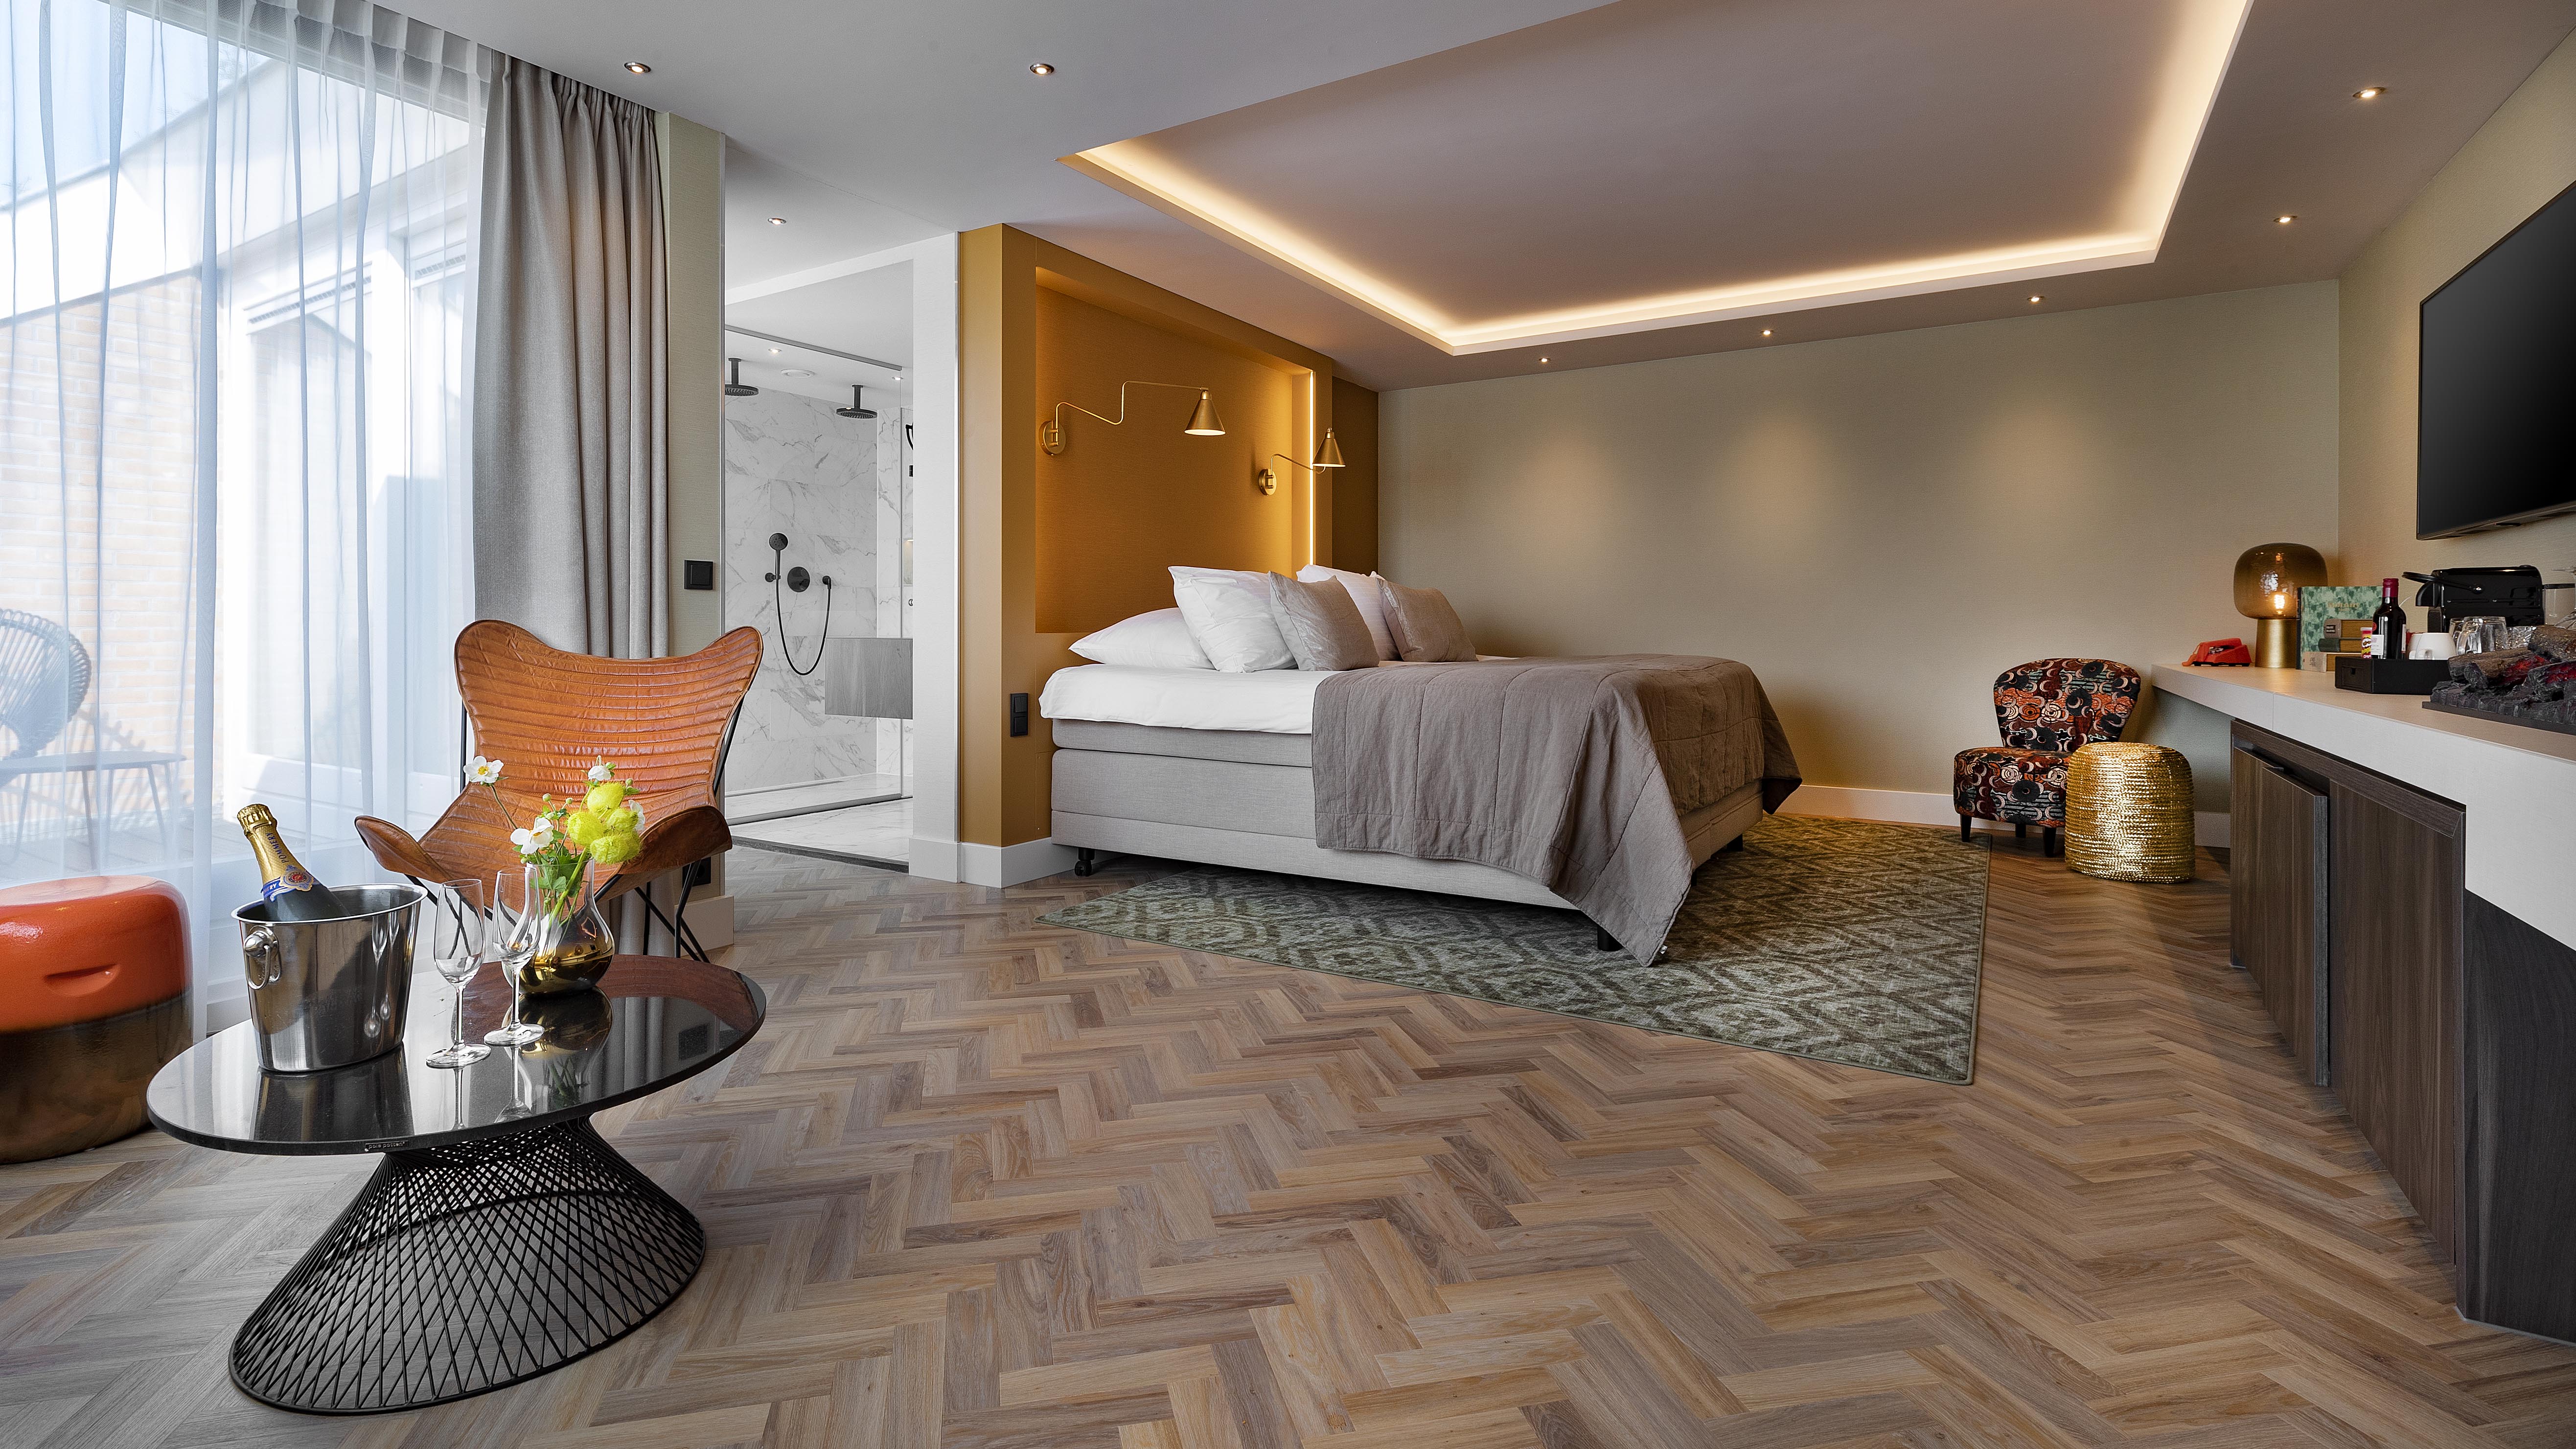 Hotel Emmeloord - Suite dreams package